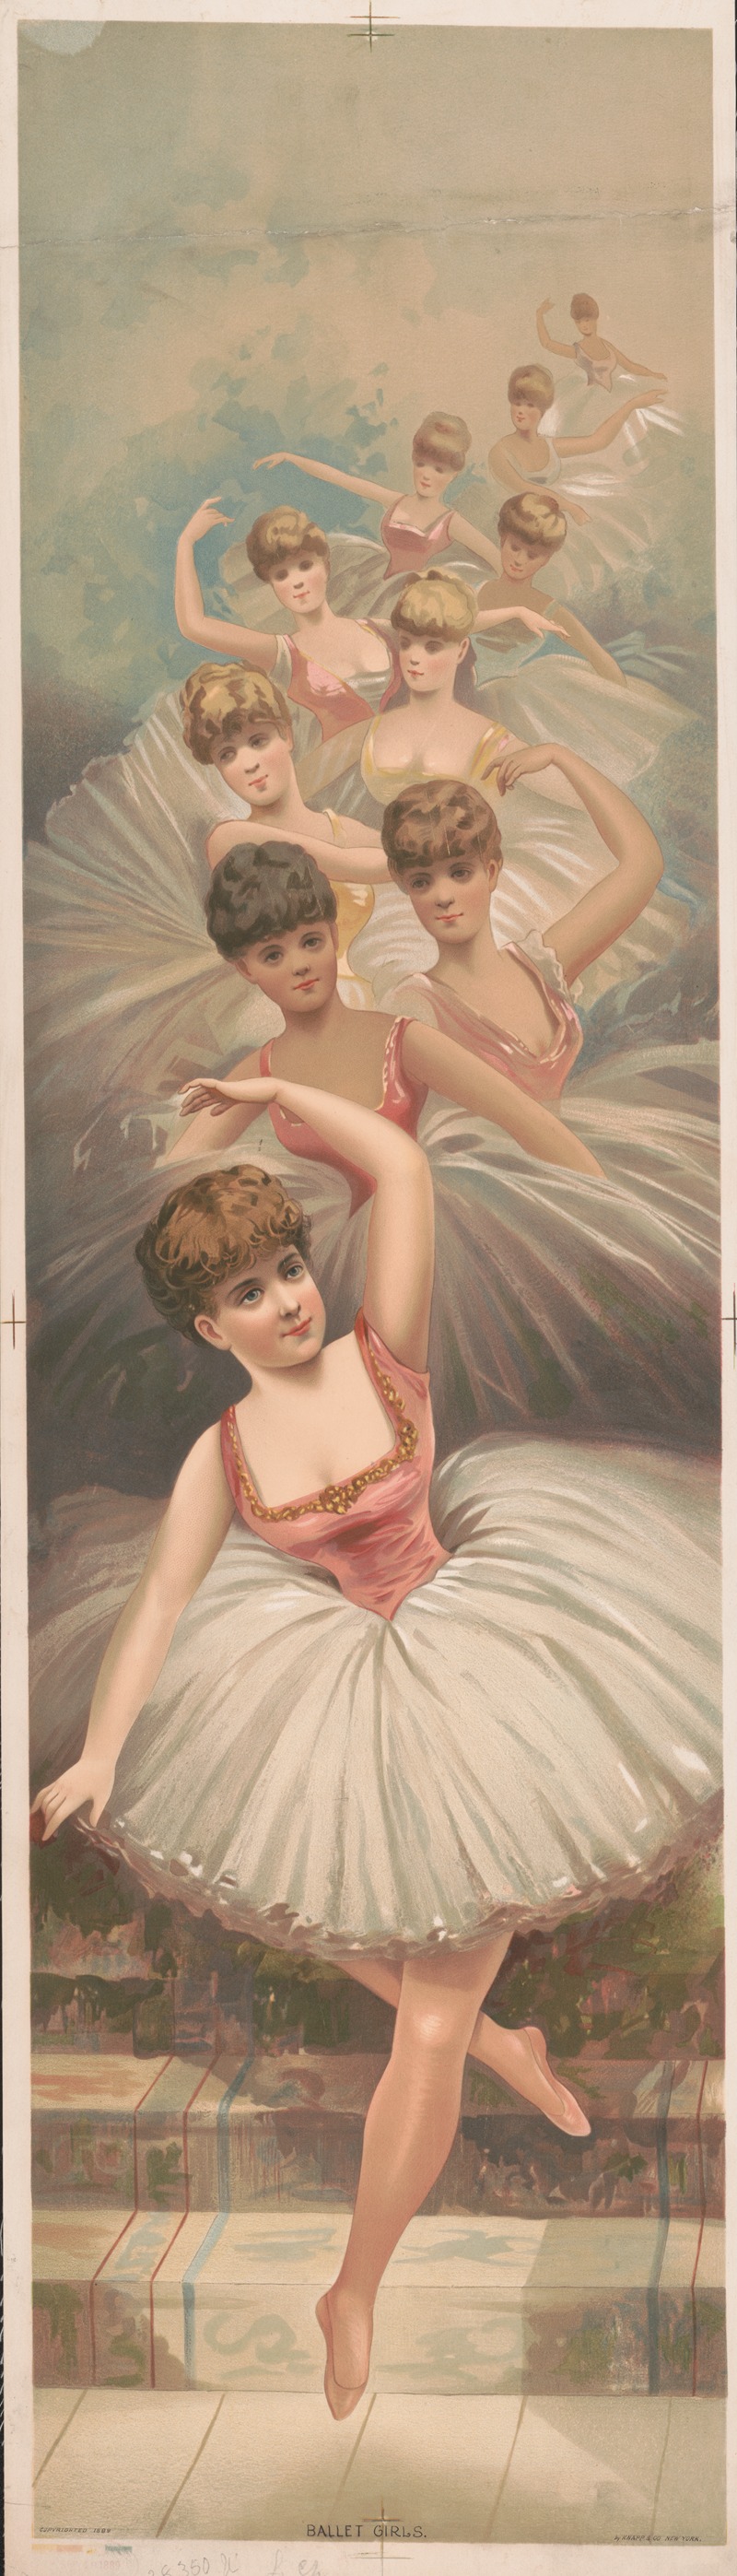 Knapp & Co. - Ballet girls